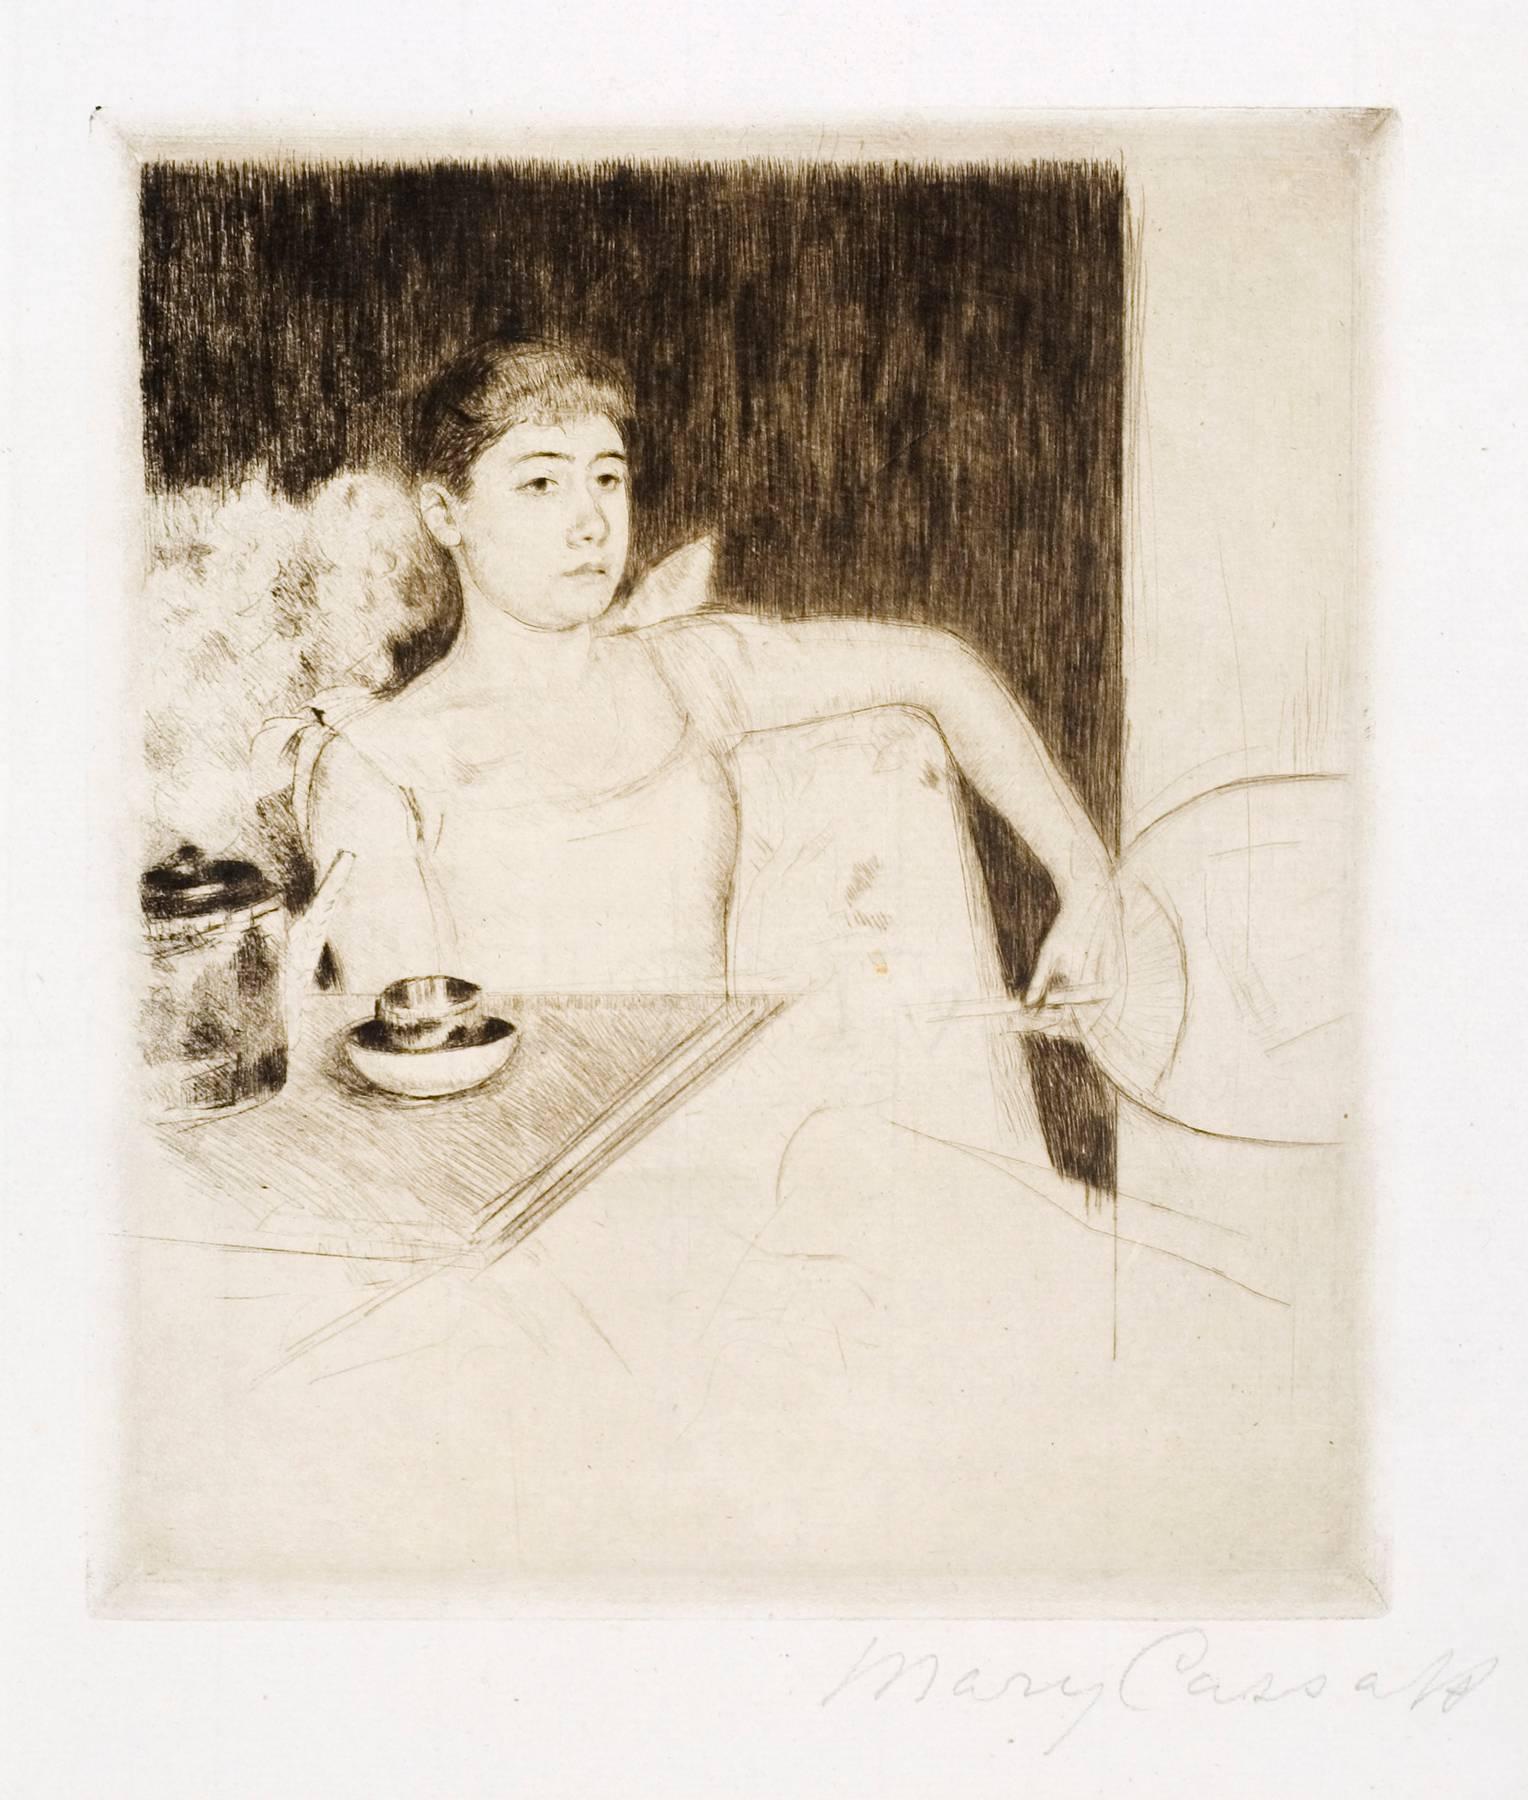 What were Mary Cassatt's two major works of art?